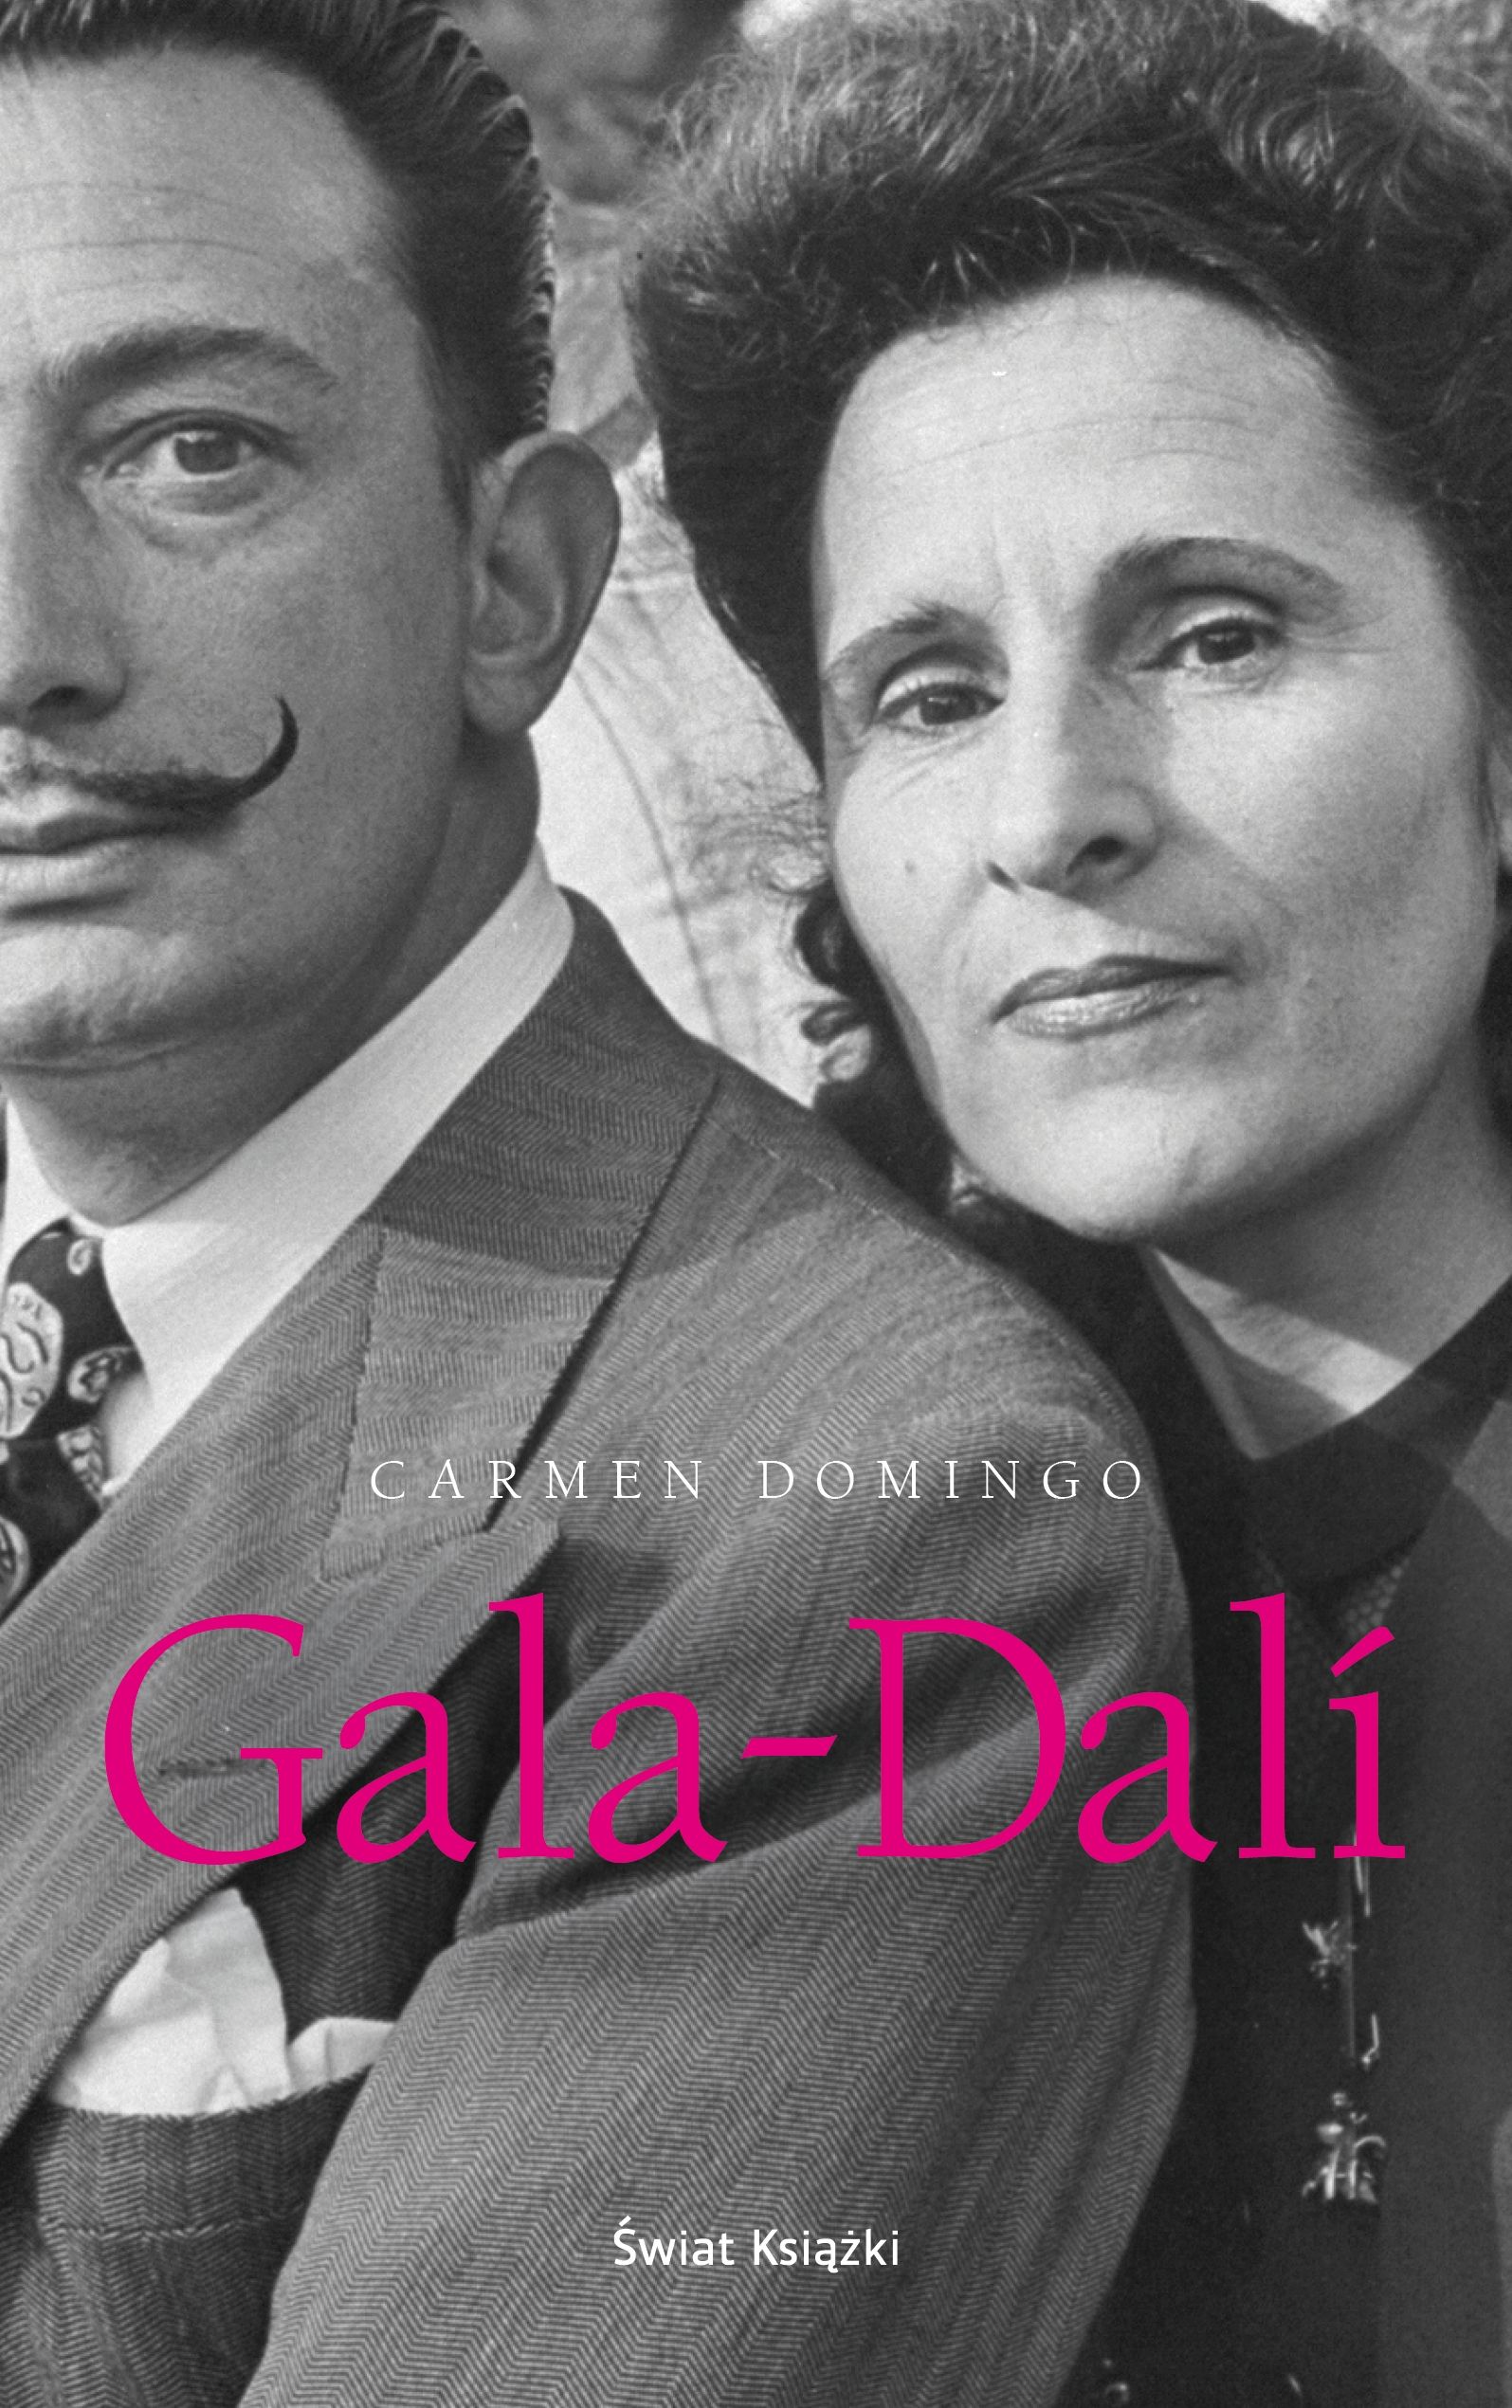 Artykuł powstał między innymi w oparciu o książkę Carmen Domingo "Gala-Dalí", wydaną niedawno przez Świat Książki.